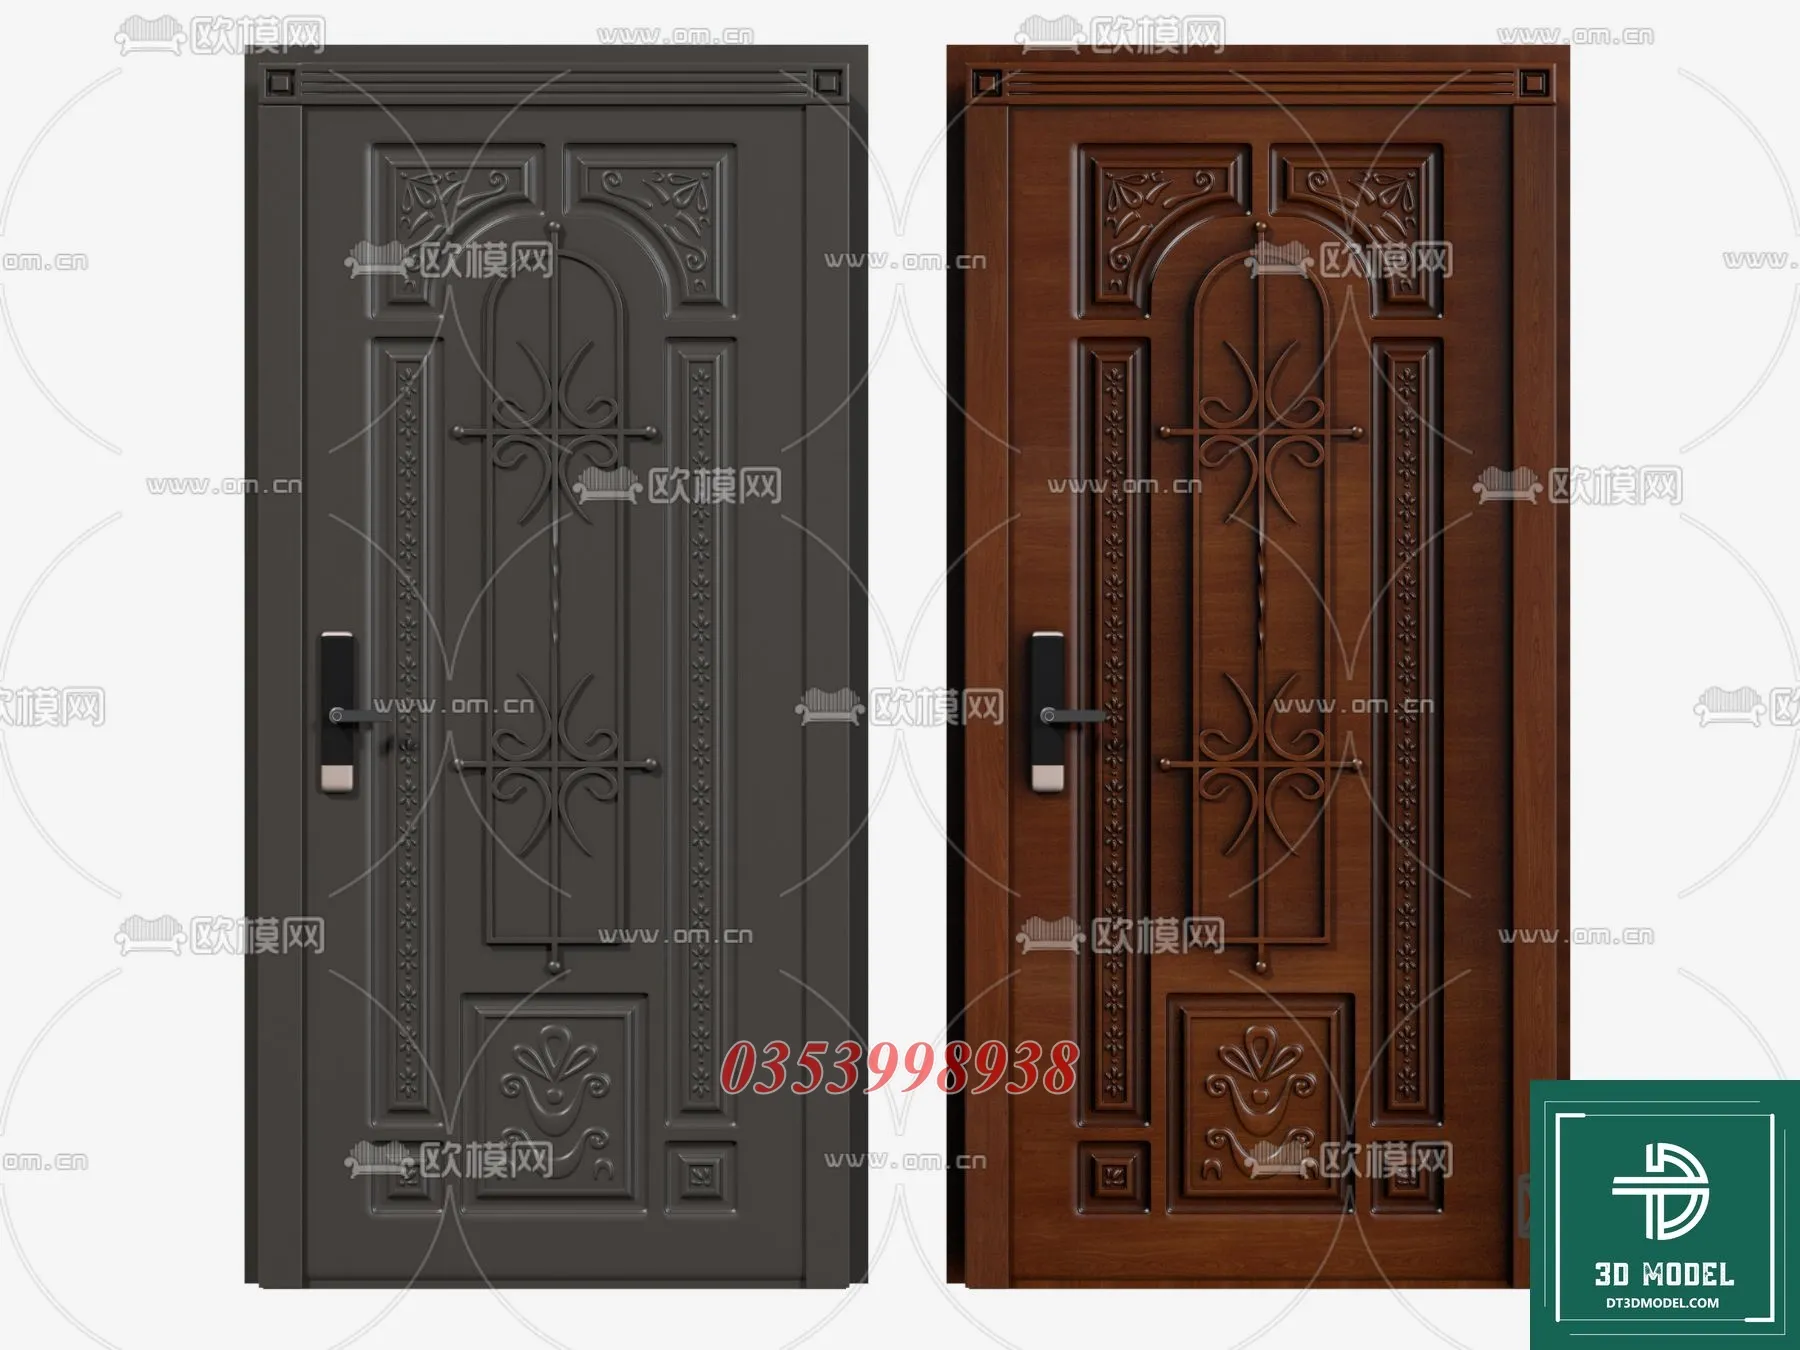 CLASSIC DOOR – 3dsmax MODELS – 112